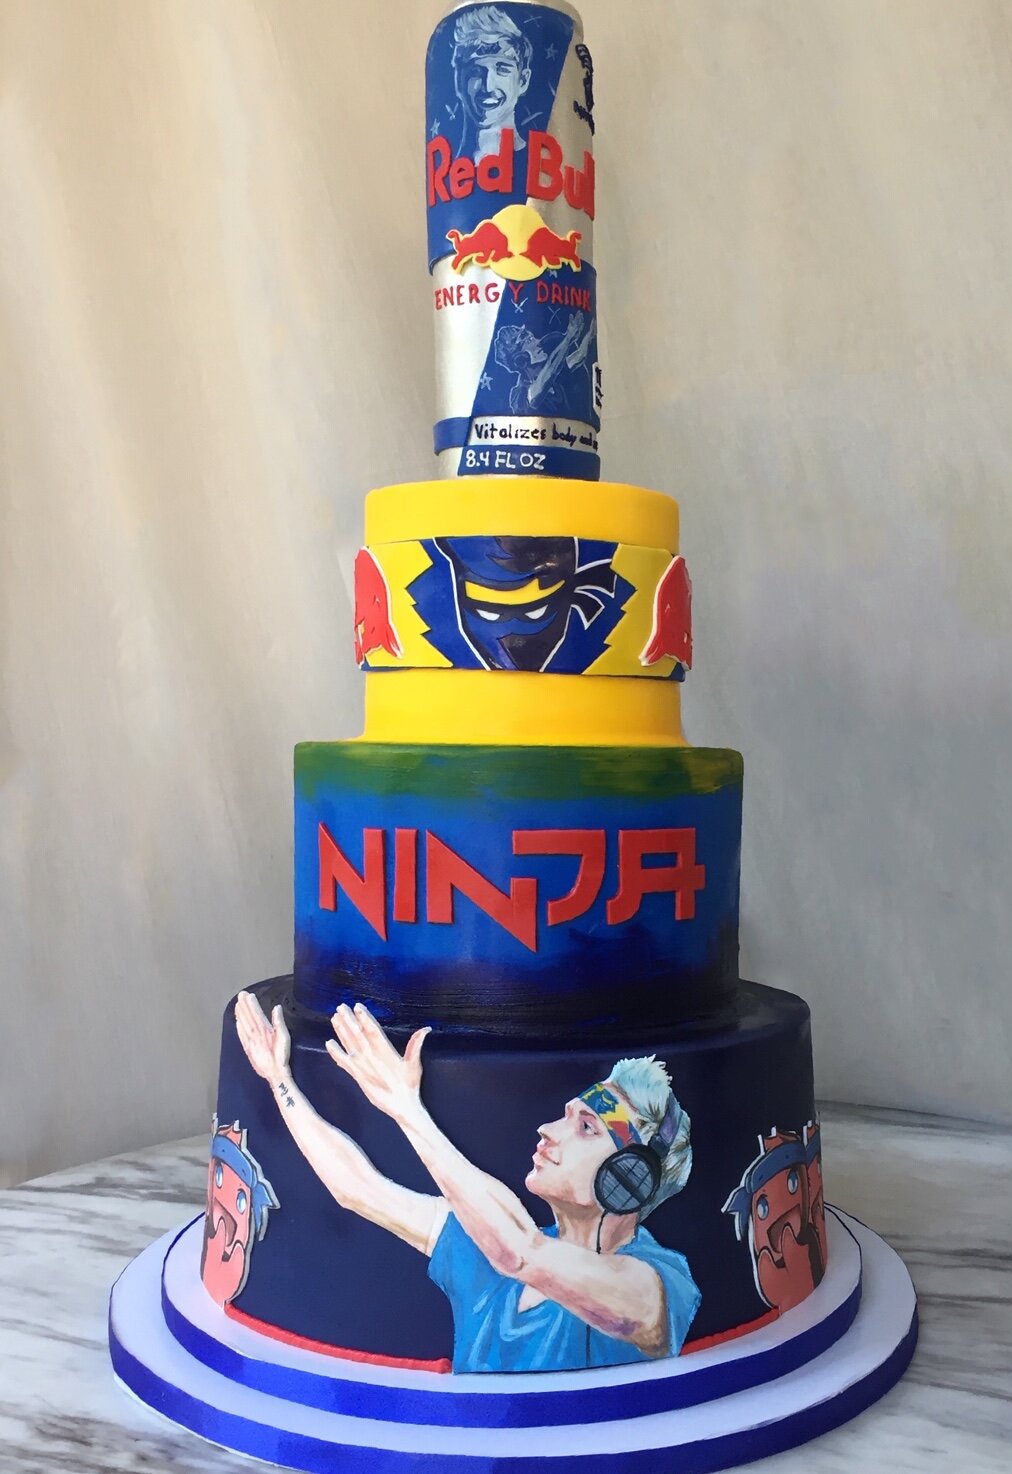 Ninja Red Bull Tiered Cake